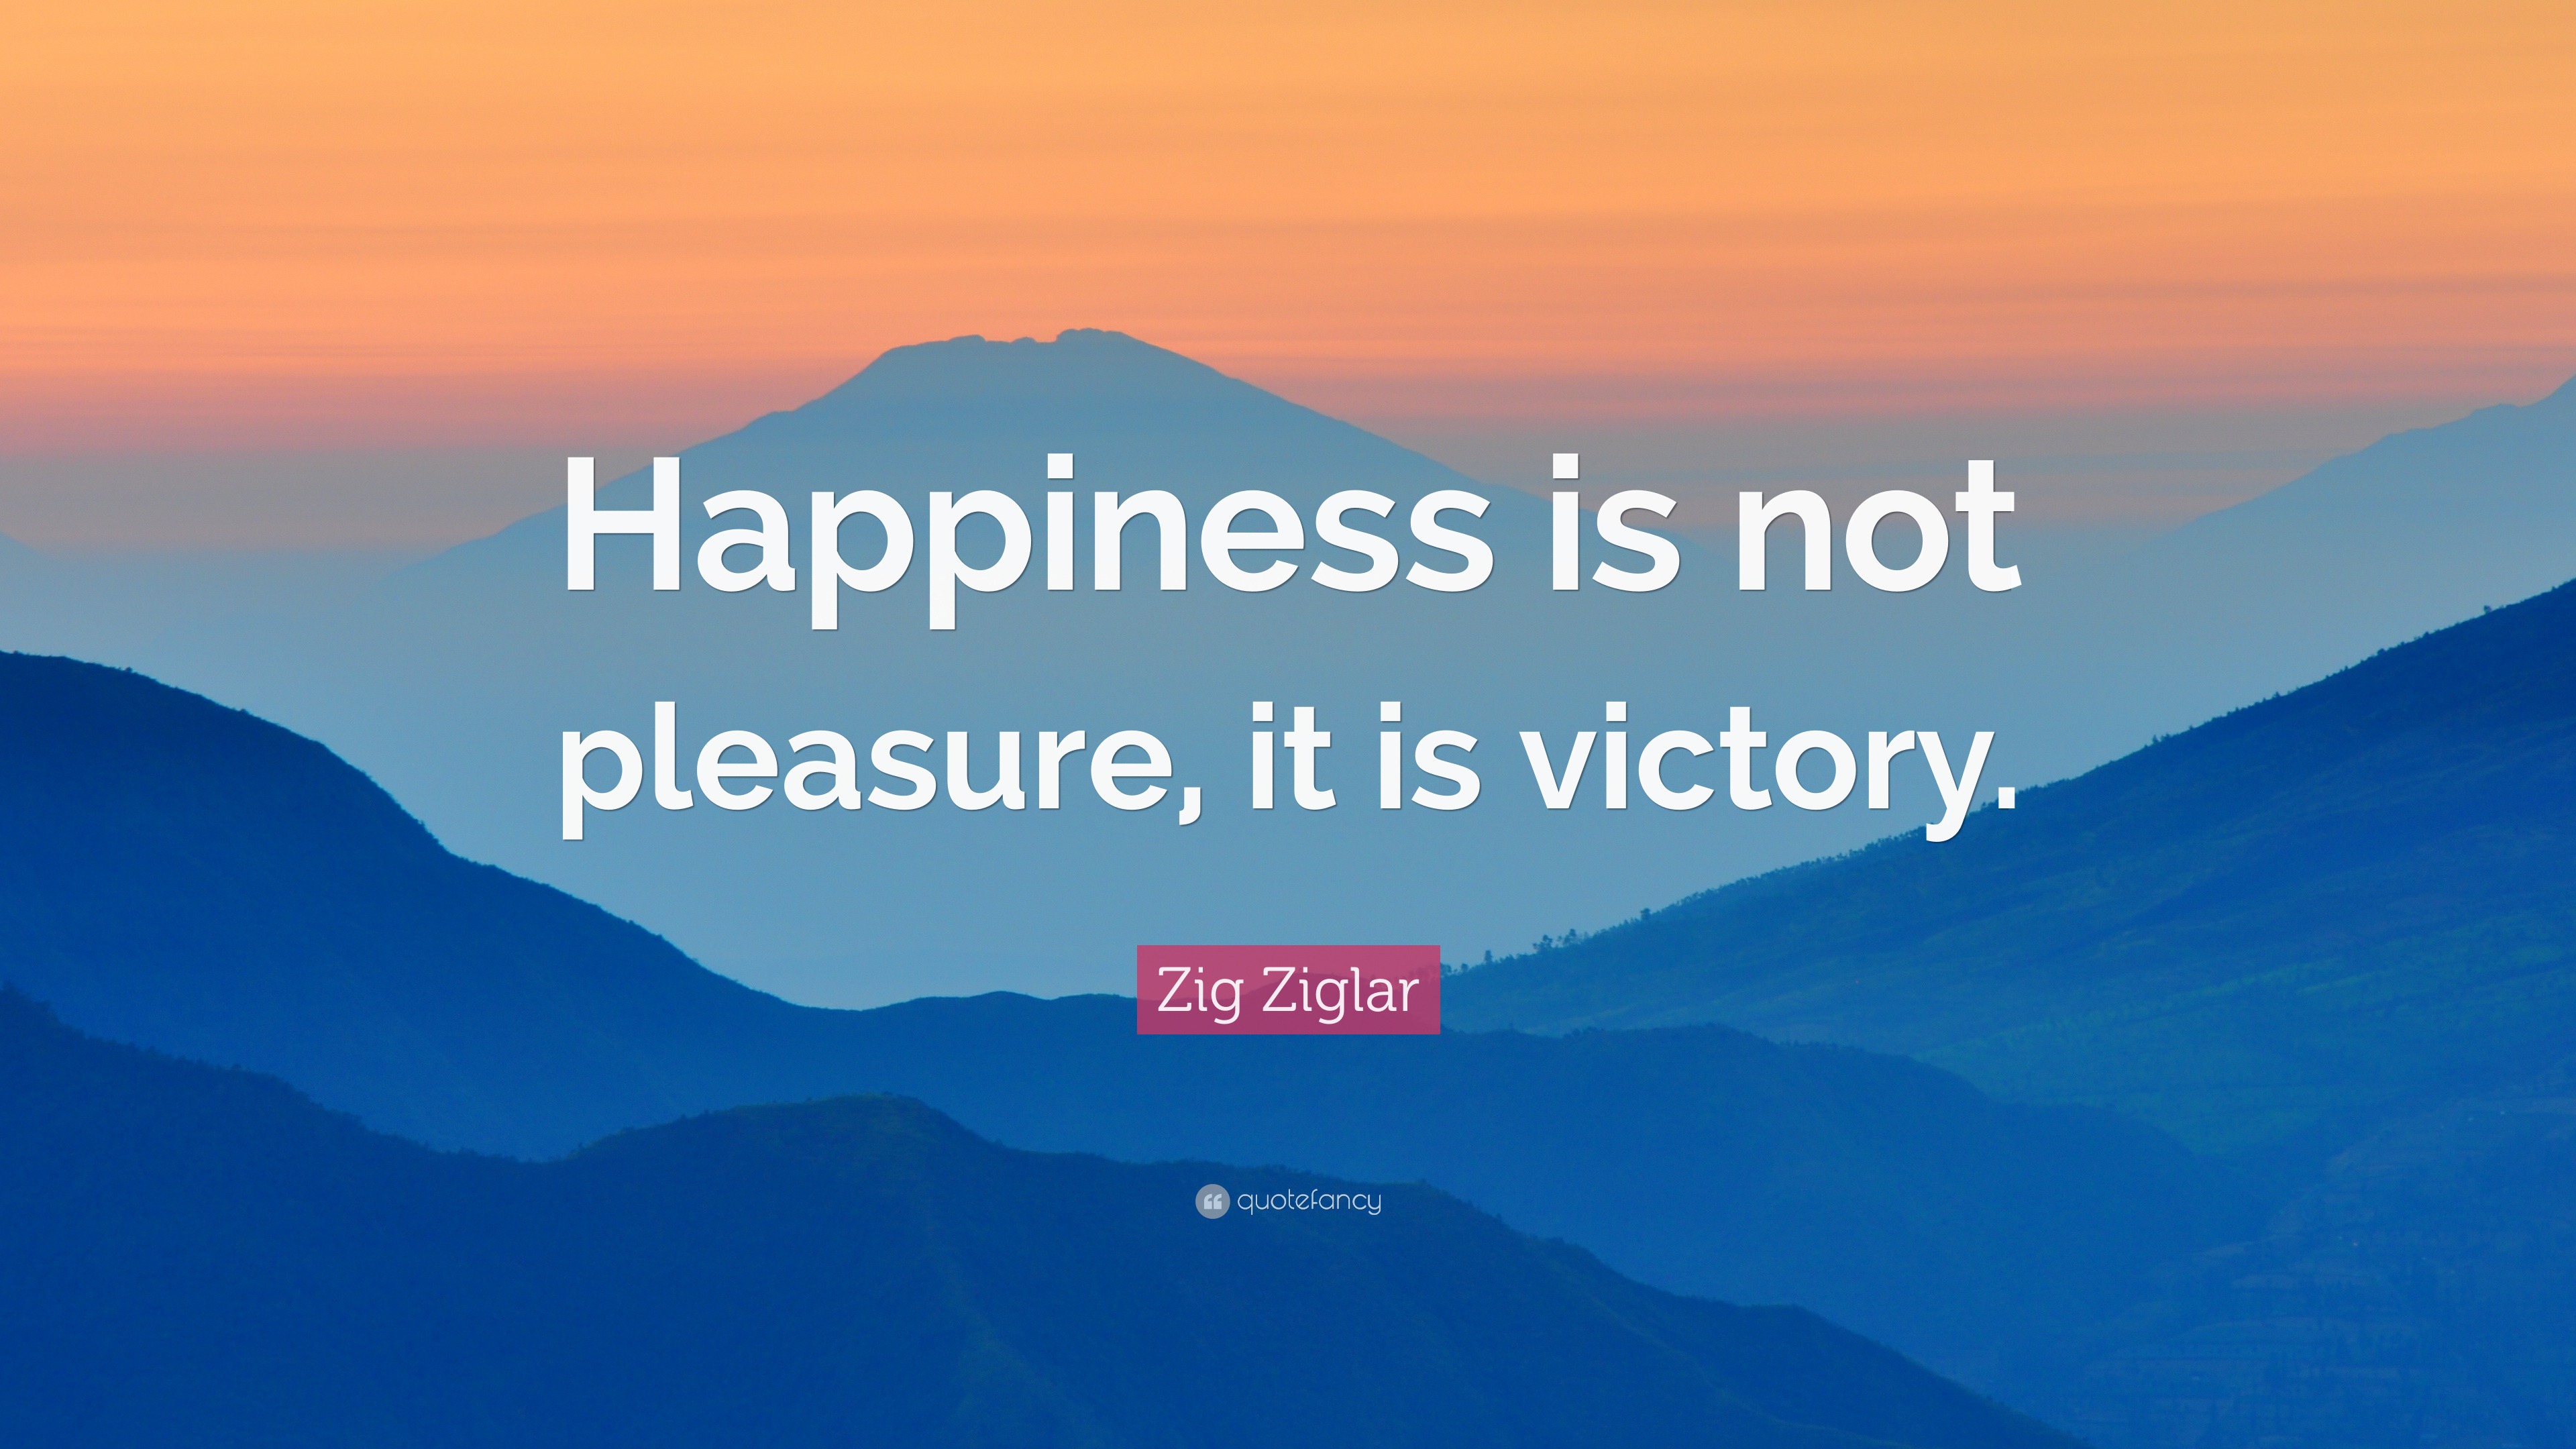 Zig Ziglar Quote: “Happiness is not pleasure, it is victory.”